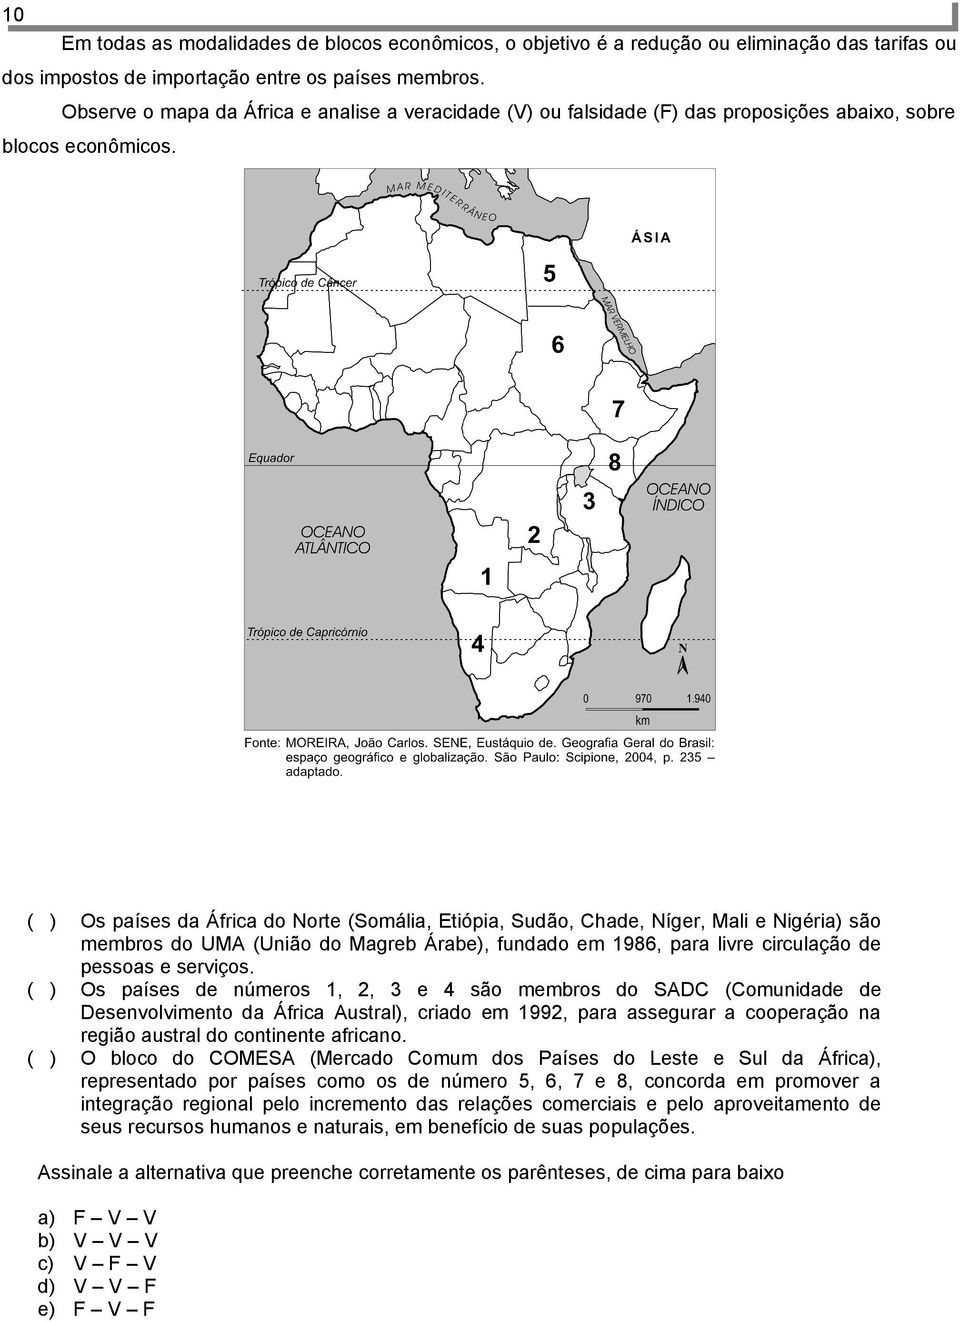 Os países da África do Norte (Somália, Etiópia, Sudão, Chade, Níger, Mali e Nigéri são membros do UMA (União do Magreb Árab, fundado em 986, para livre circulação de pessoas e serviços.